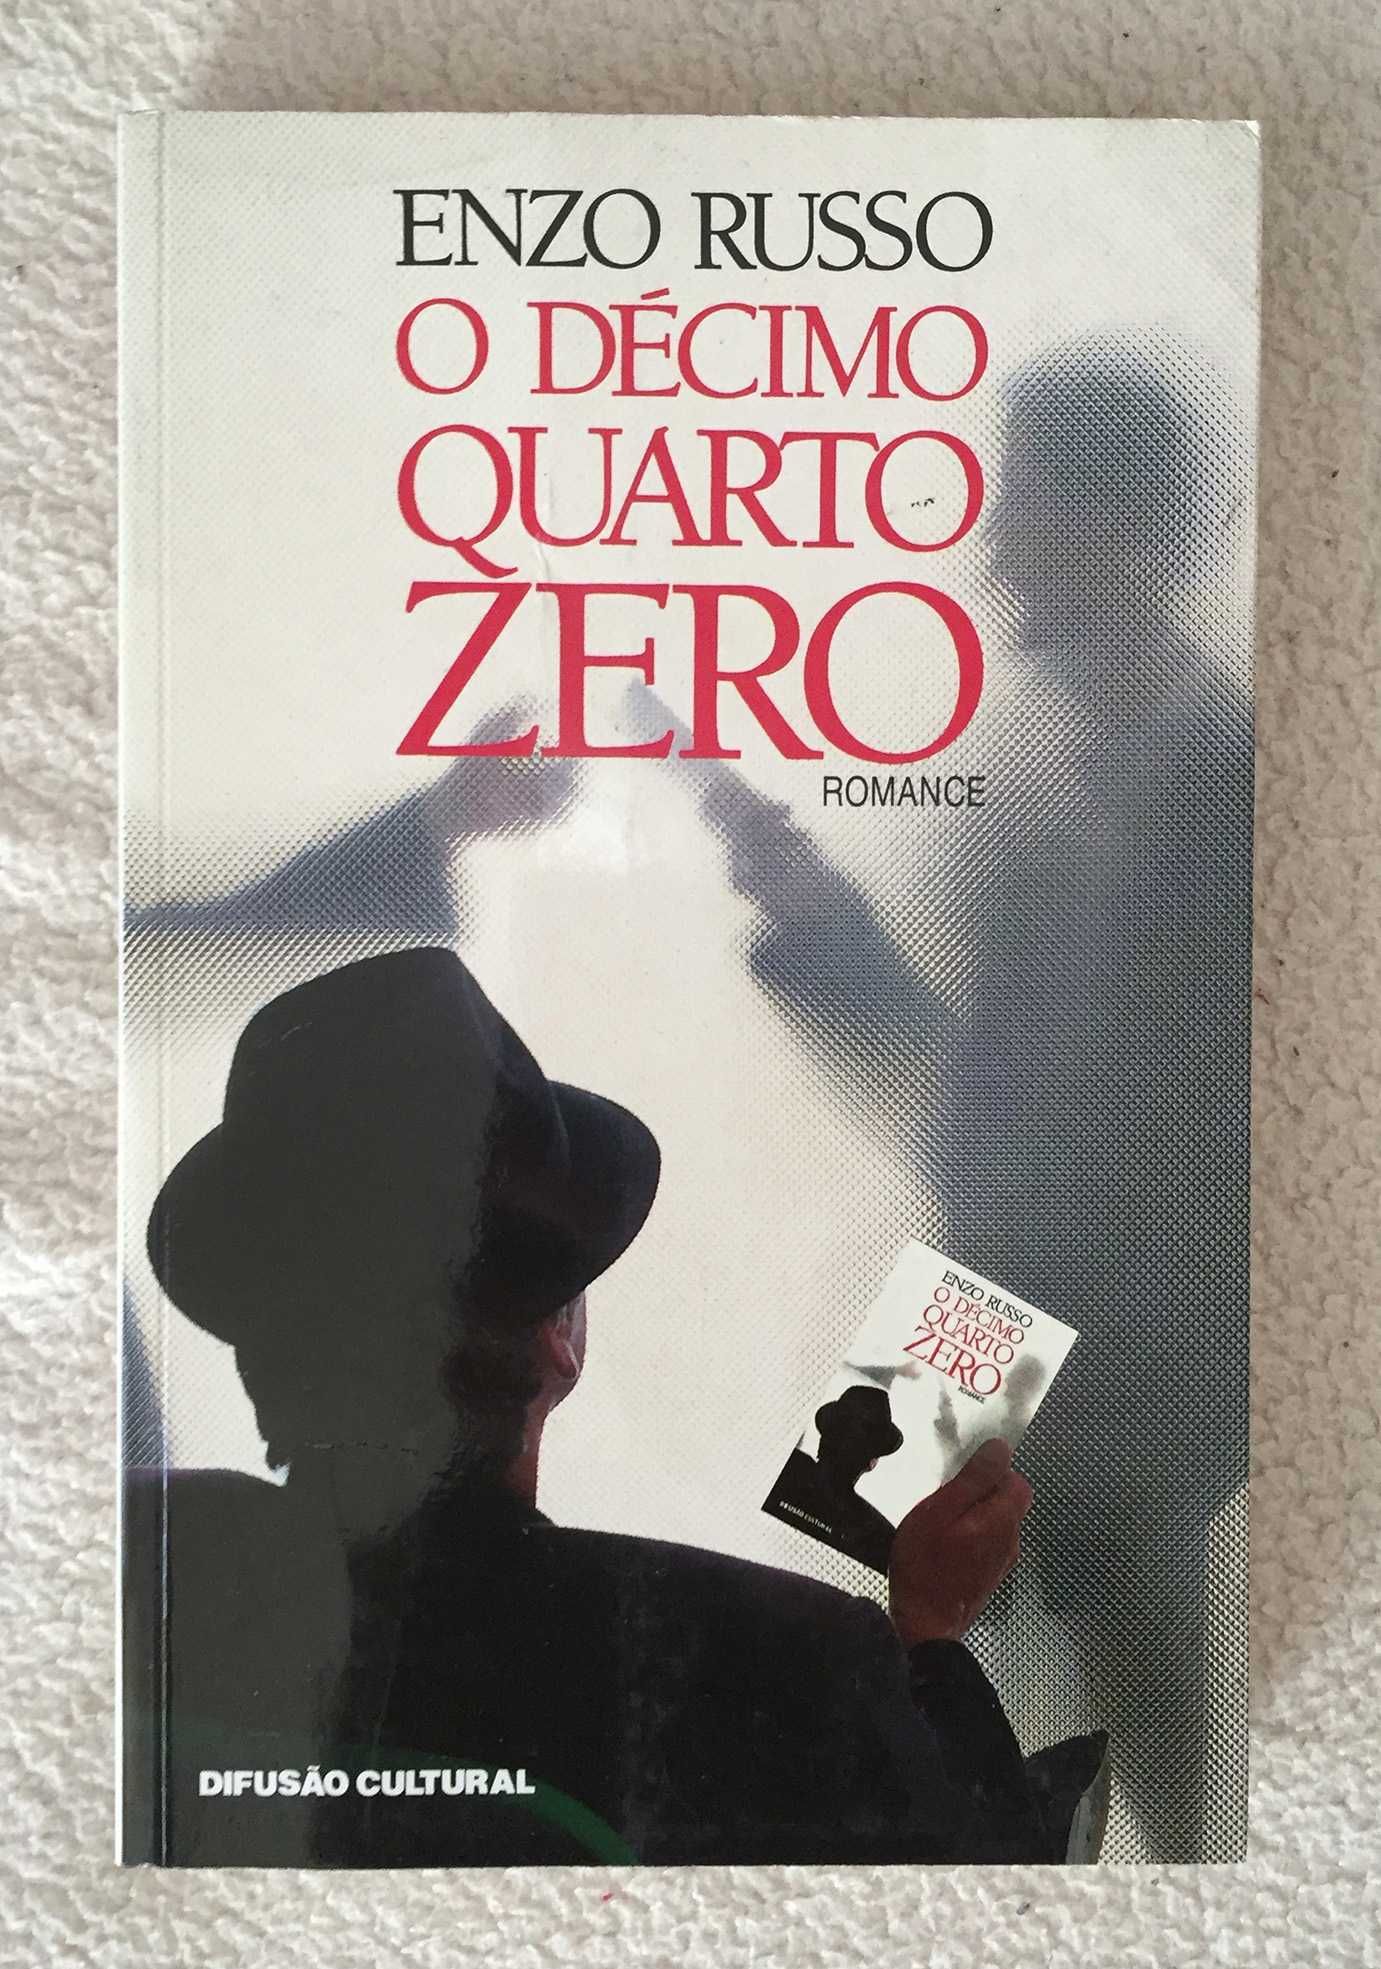 Livro "O décimo quarto zero"